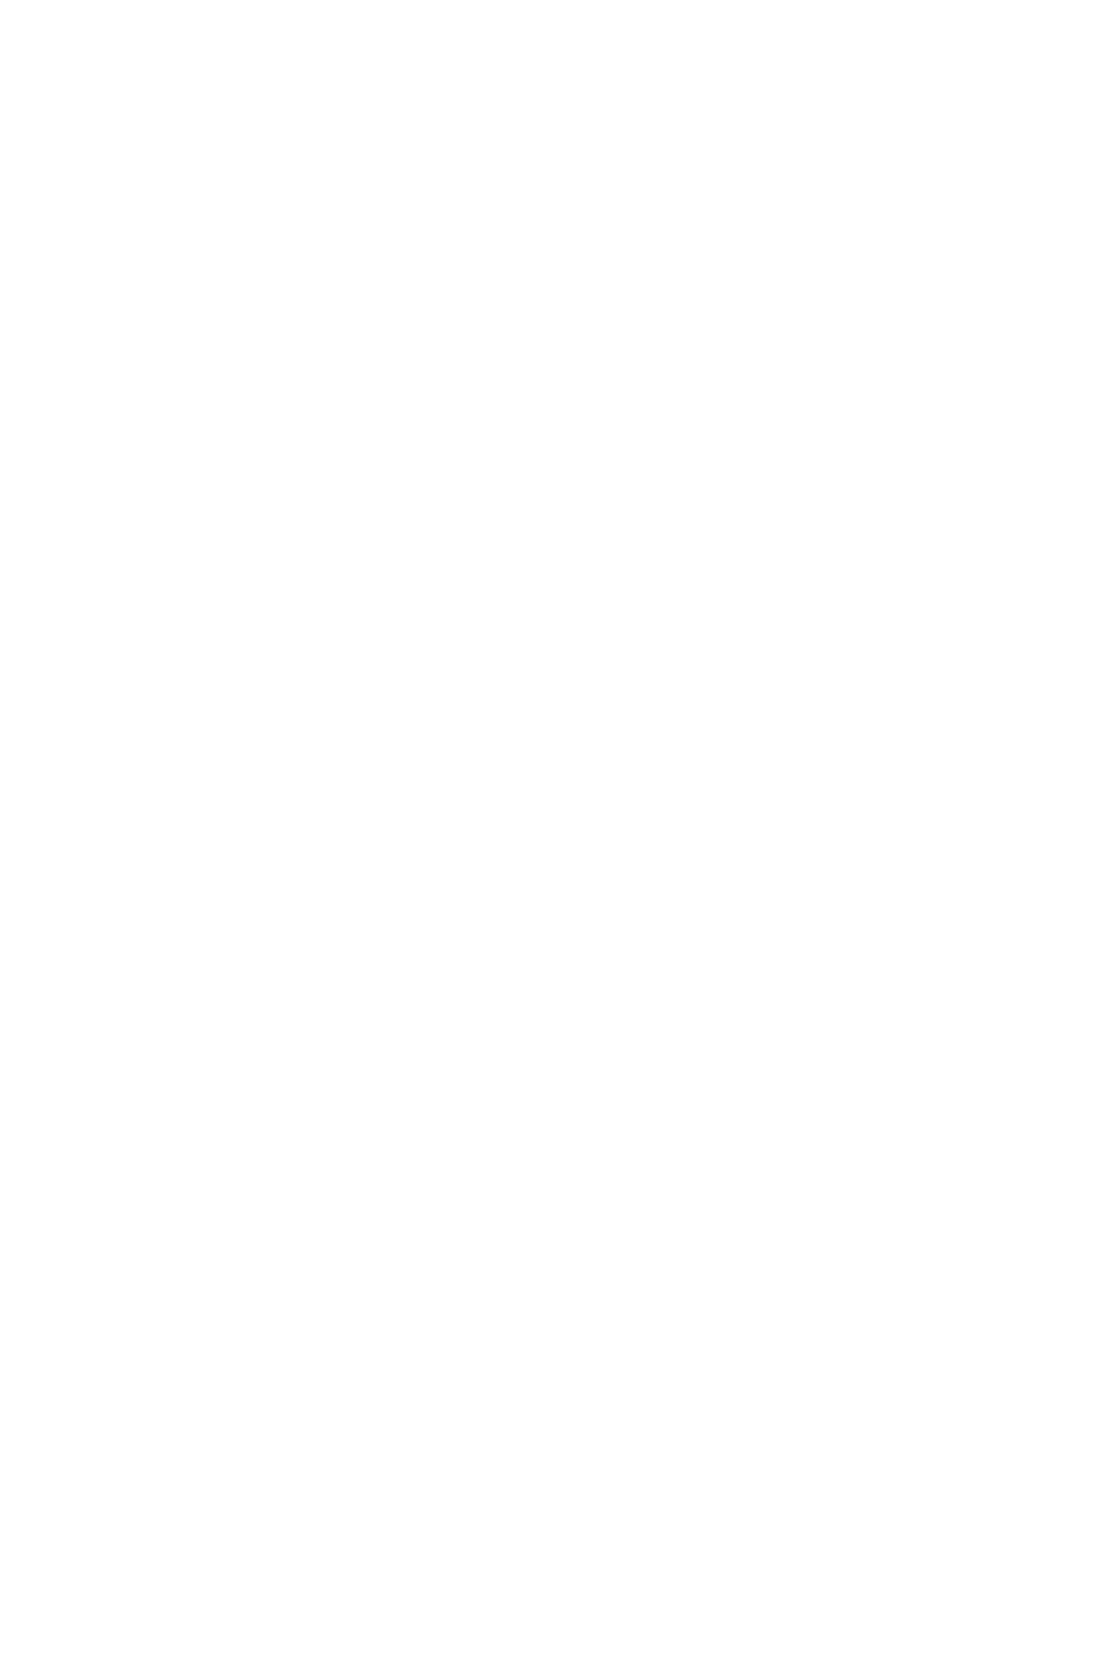 Полушубок в полоску из искусственного меха с воротником стойкой большого размера пошить на заказ по индивидуальным меркам со скидкой и доставкой по России, в Казахстан и Беларусь